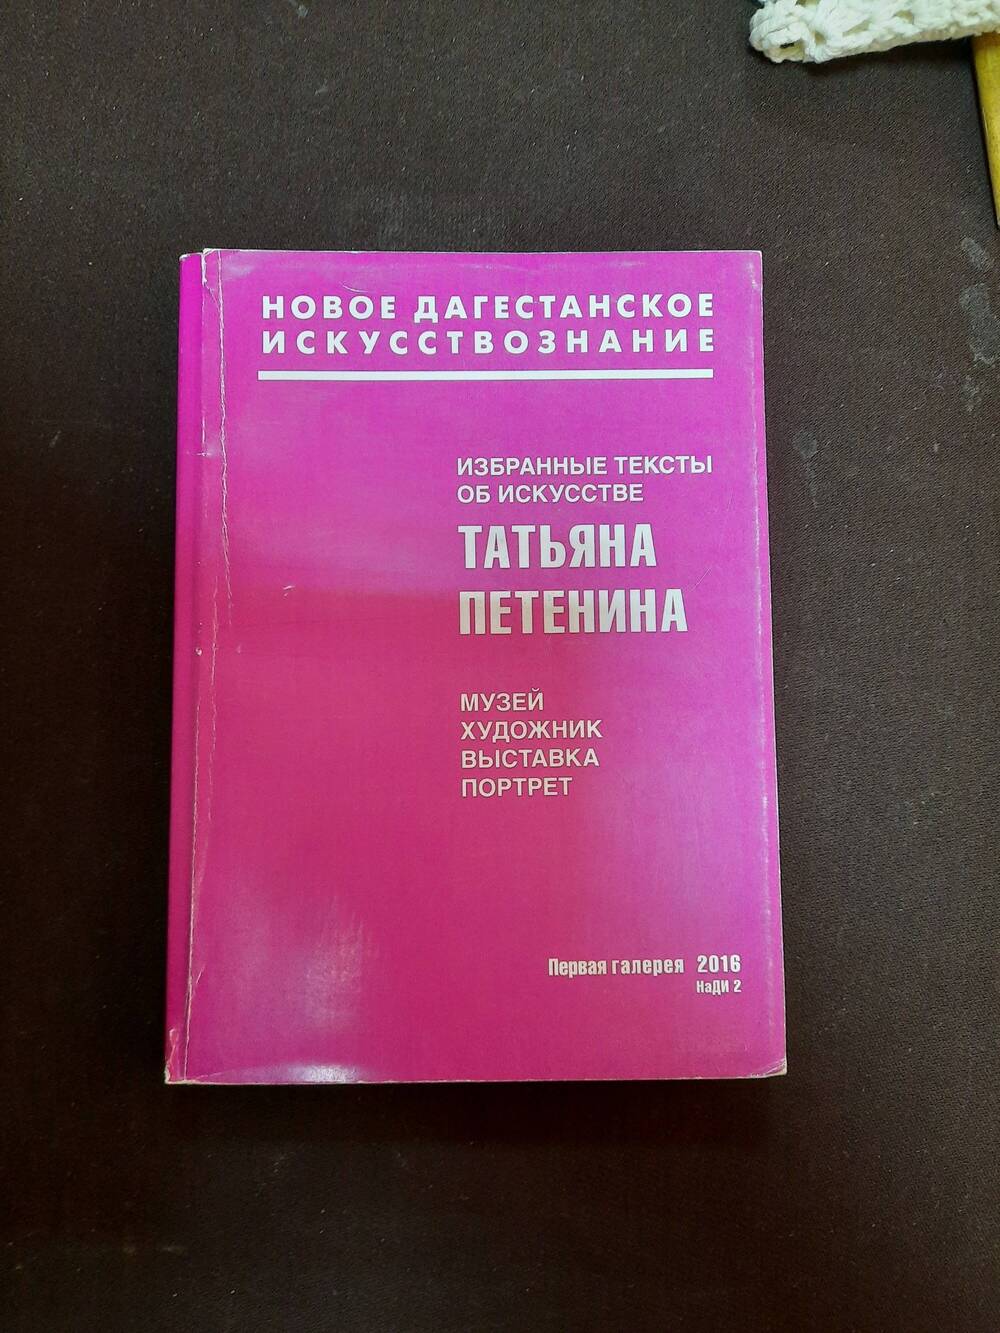 Книга. Татьяна Петенина. Избранные тексты об искусстве.